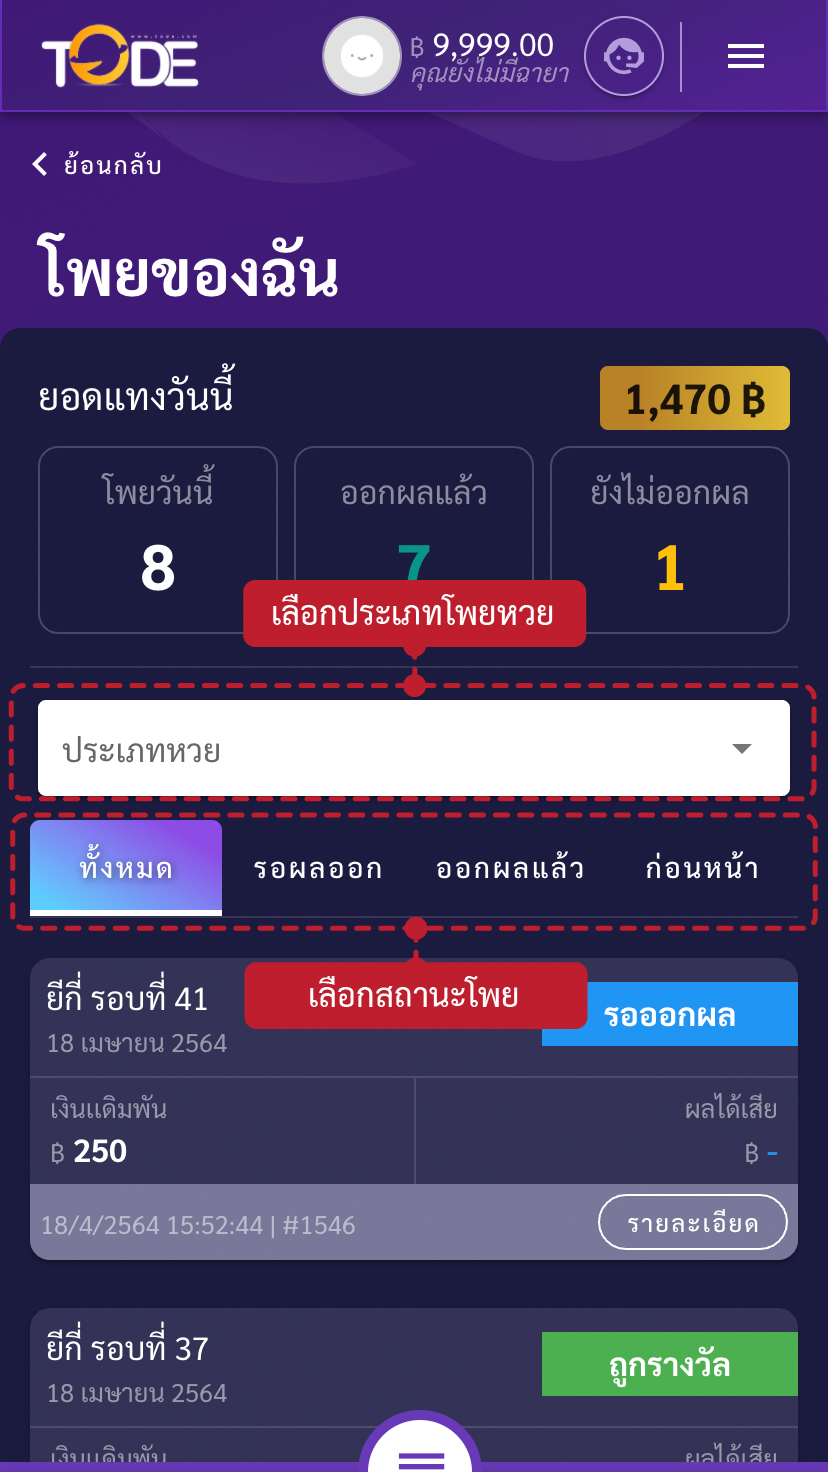 ขั้นตอนวิธีตรวจผลหวยเว็บโต๊ดเว็บแทงหวยอันดับ1ของไทยสูงสุดบาทละ1200